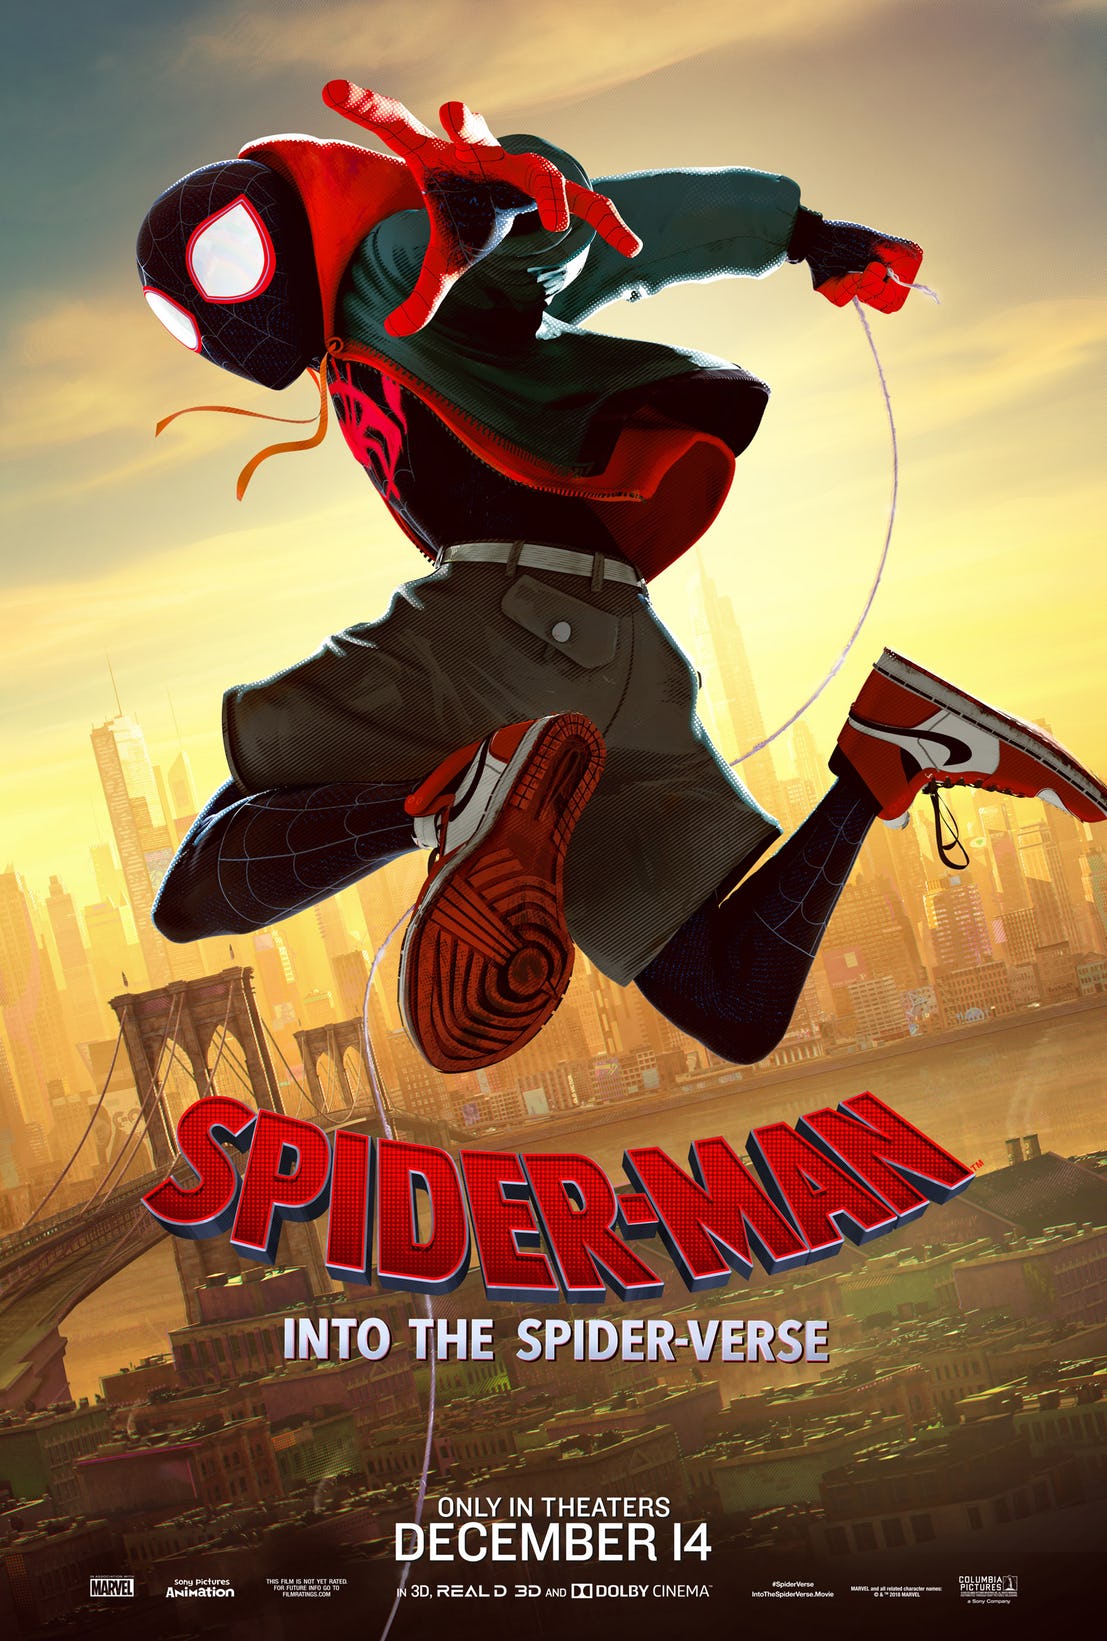 SpiderMan Un nuovo universo, il character poster di Miles Morales